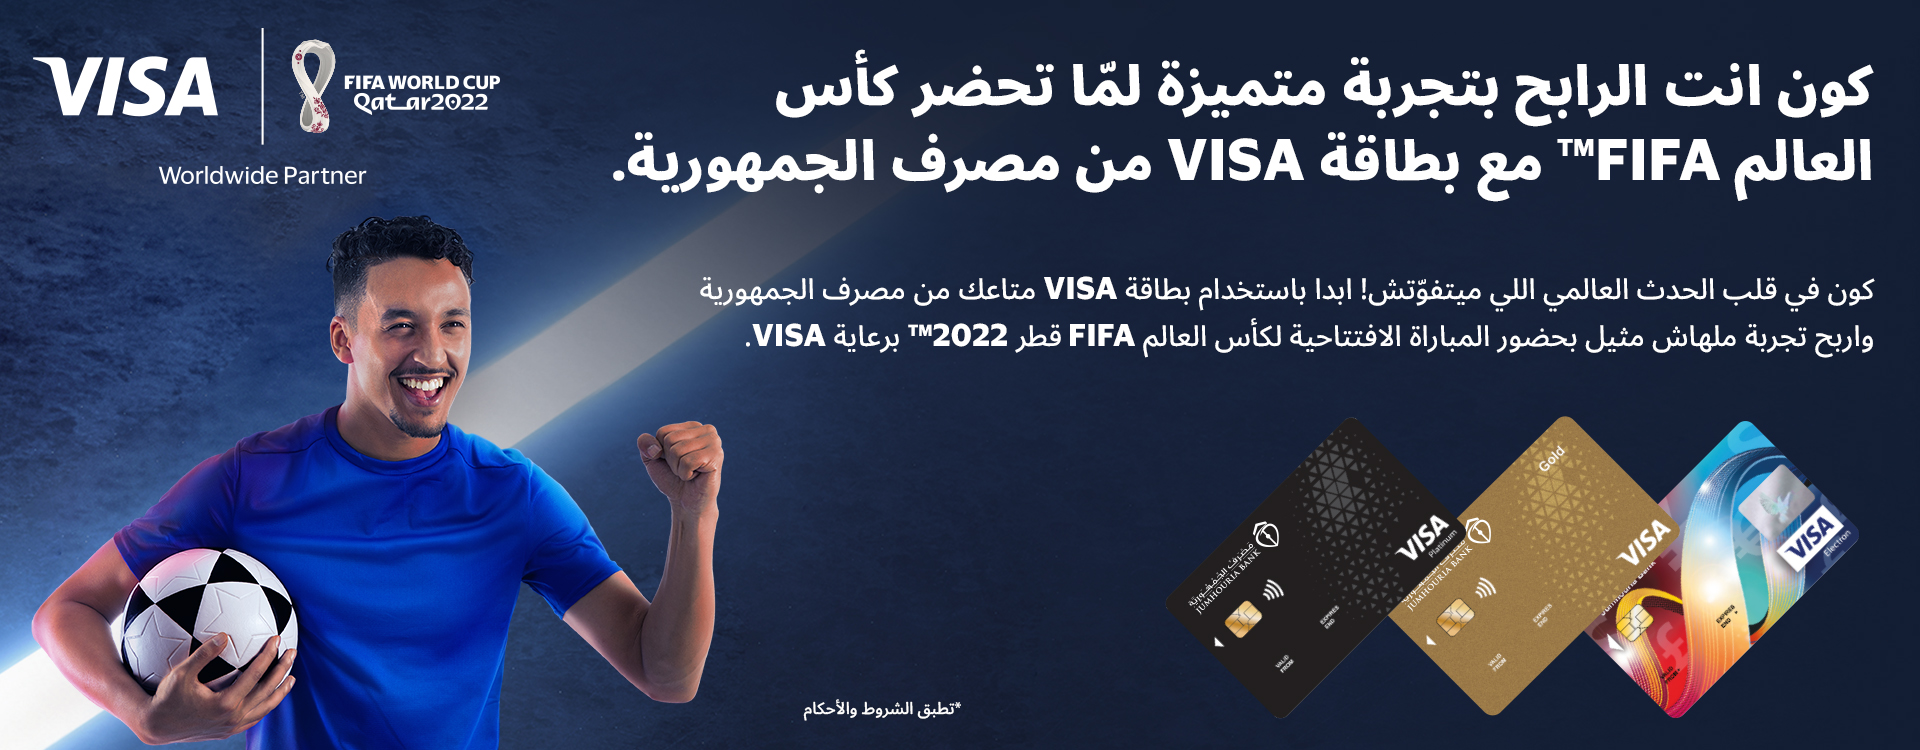 فرصتك لحضور كأس العالم FIFA قطر2022™